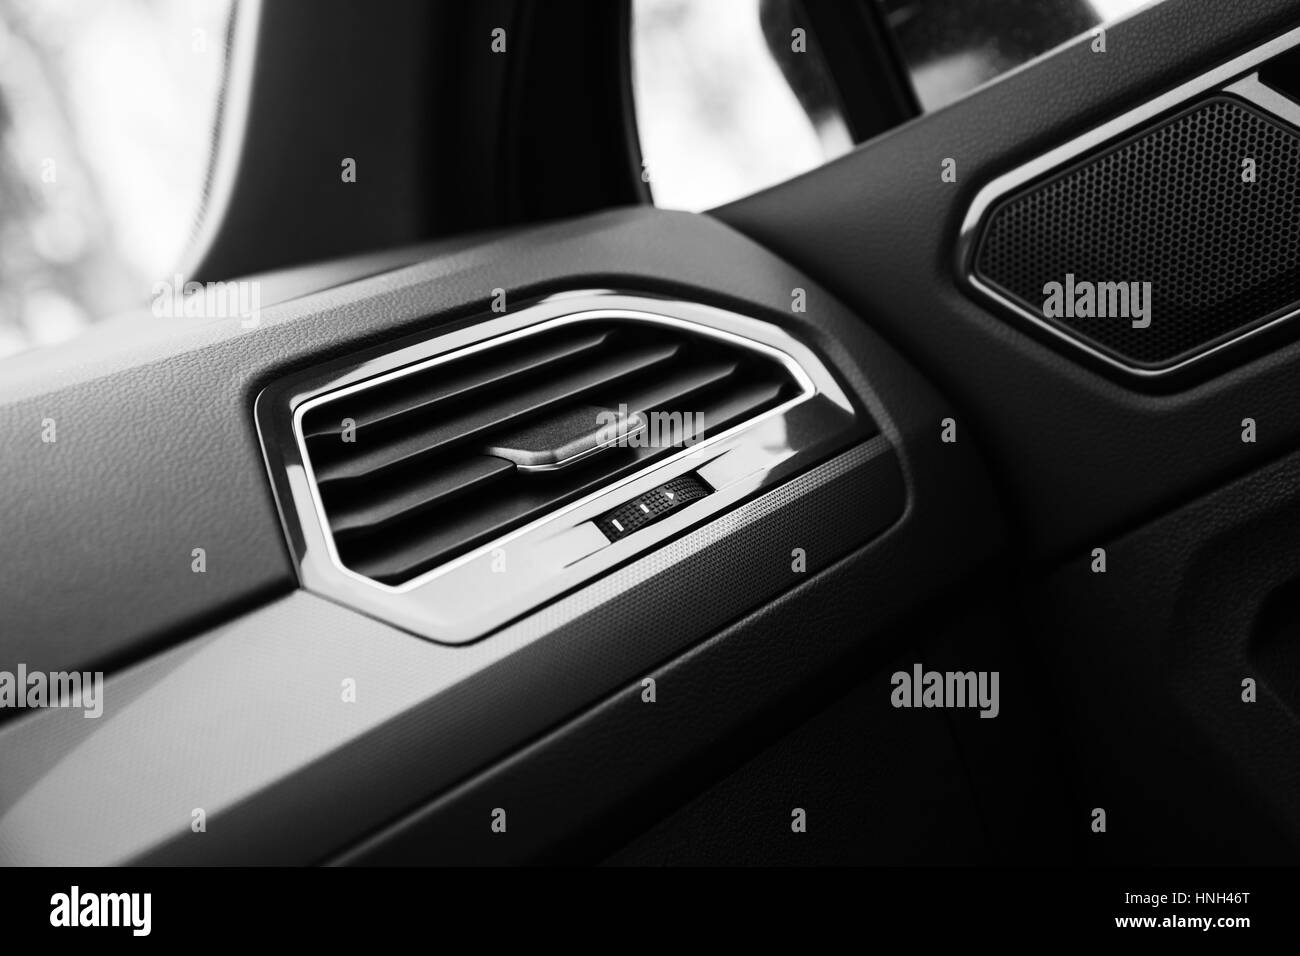 Grille de ventilation d'air avec régulateur, wheelstick détails intérieurs de voiture moderne Banque D'Images